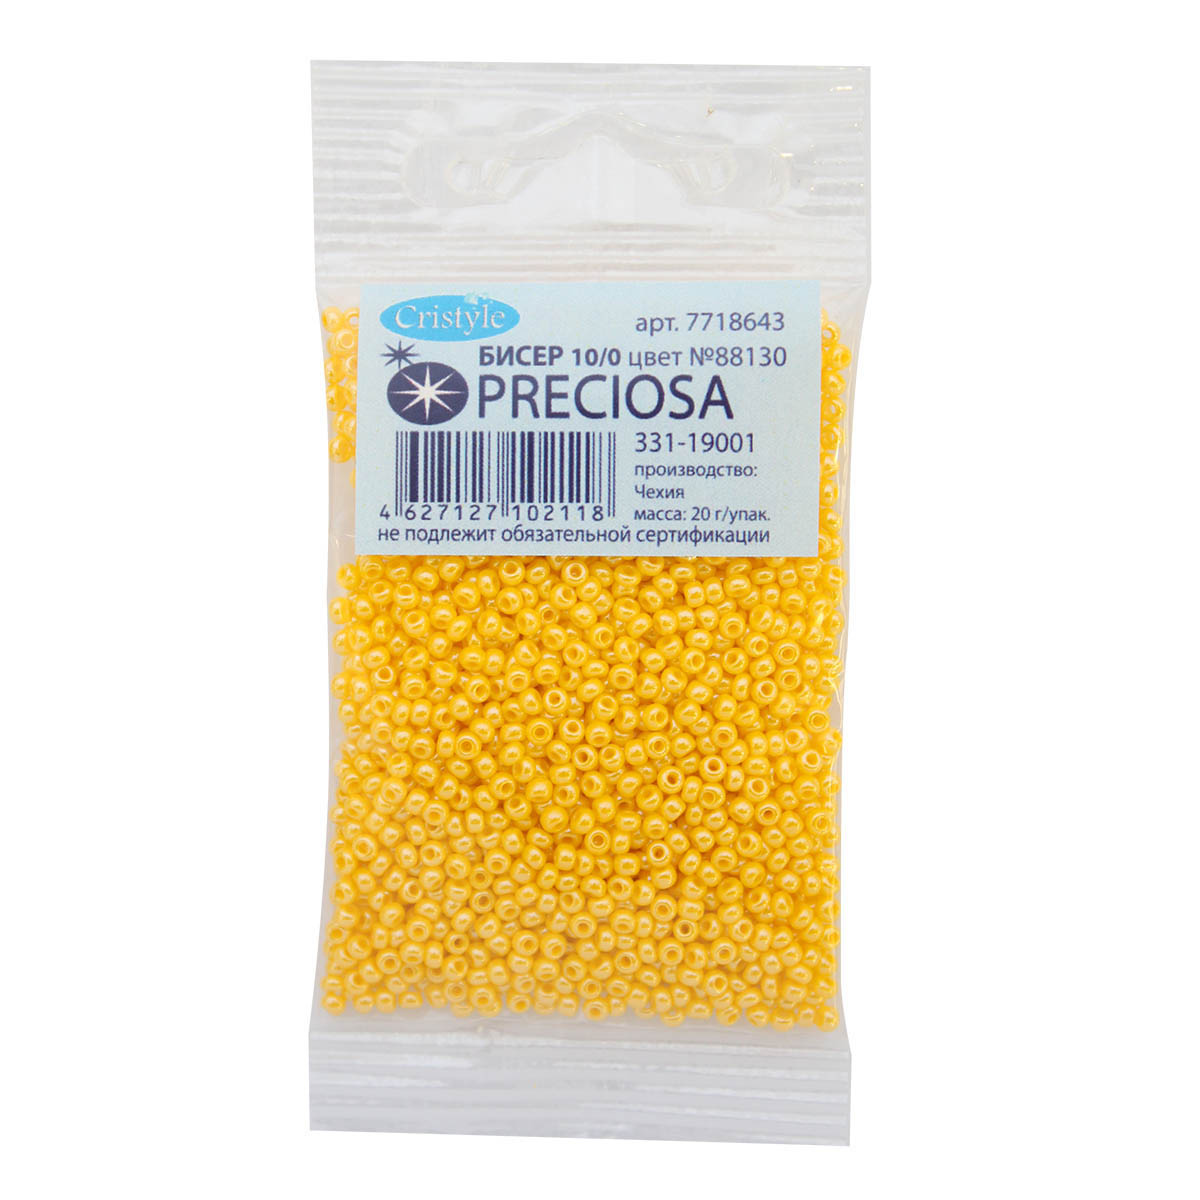 Бисер Preciosa чешский непрозрачный с жемчужным покрытием 10/0 20 гр Прециоза 88130 желтый - фото 3